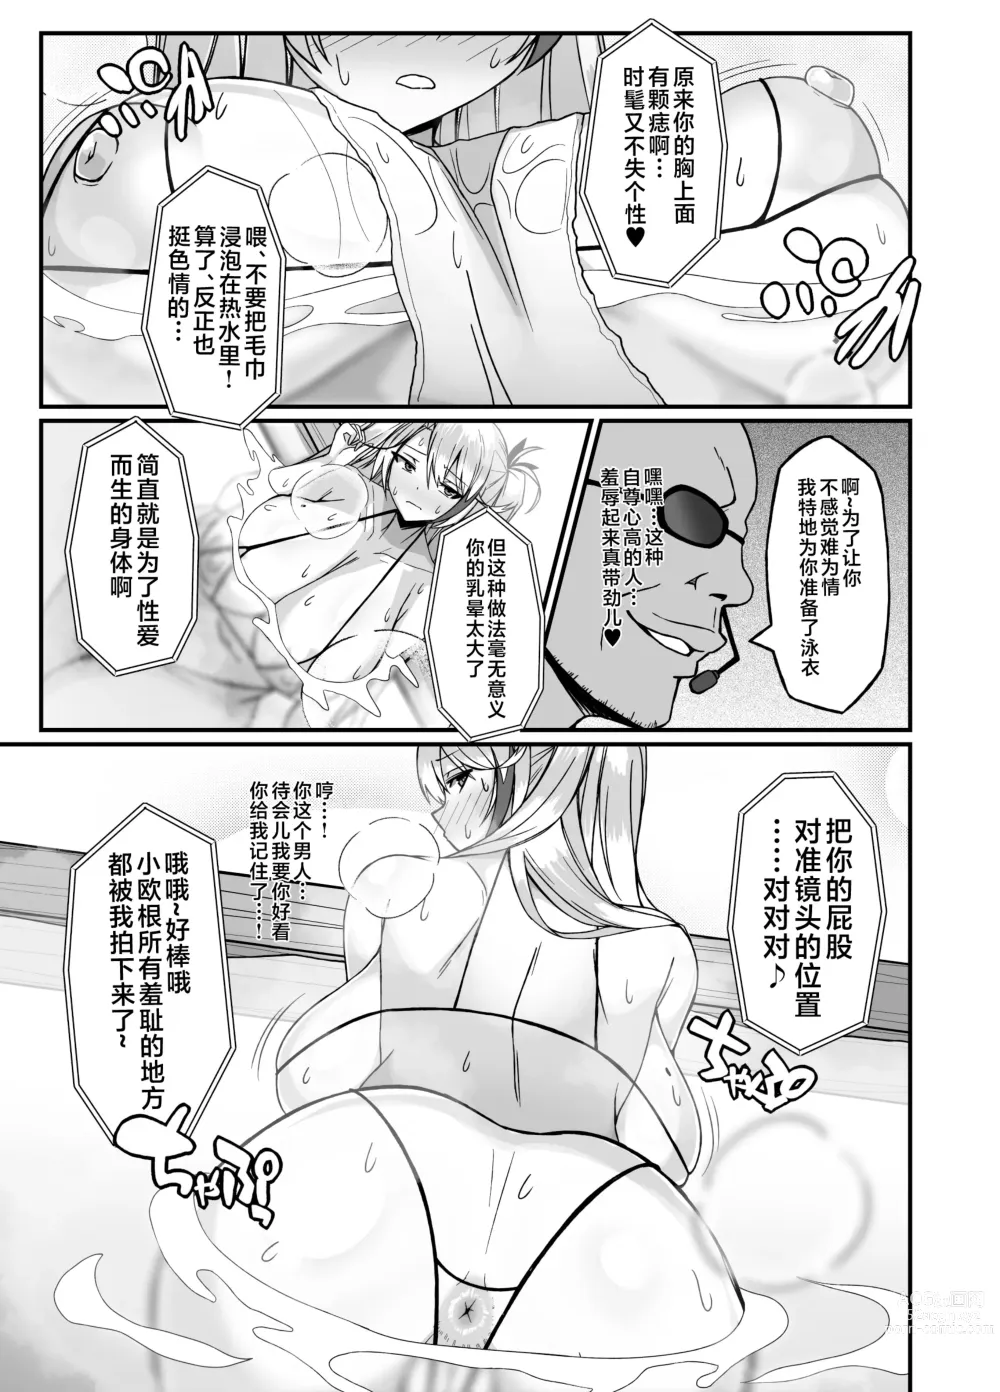 Page 5 of doujinshi Prinz Eugen Otokoyu Sennyuu Challenge